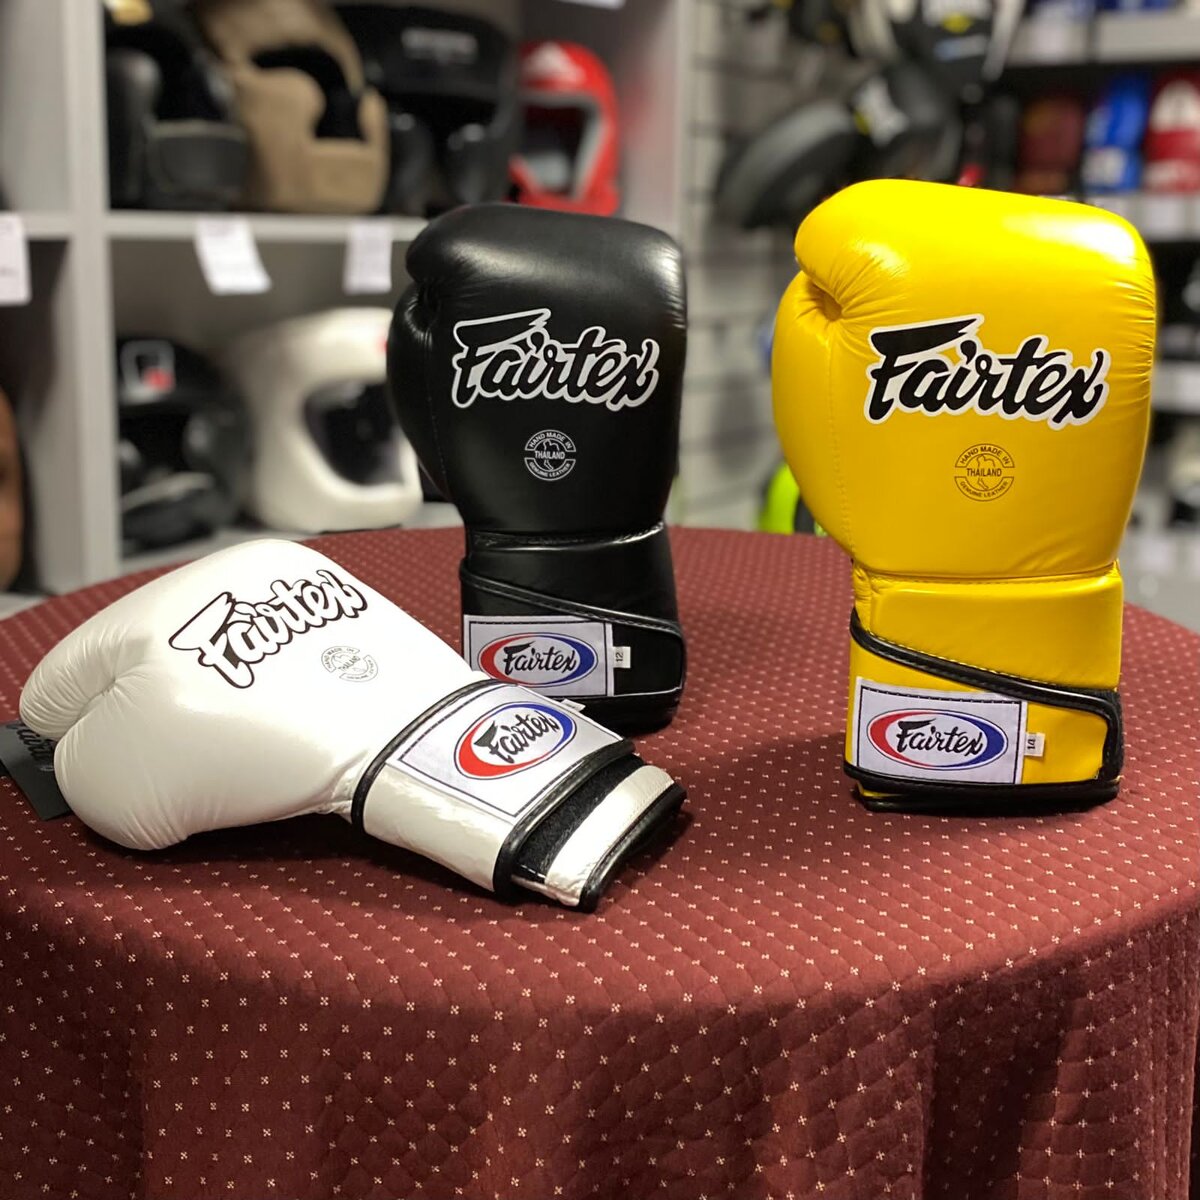 Выбор правильных боксерских перчаток является важным шагом для каждого боксера, будь то профессионал или новичок.